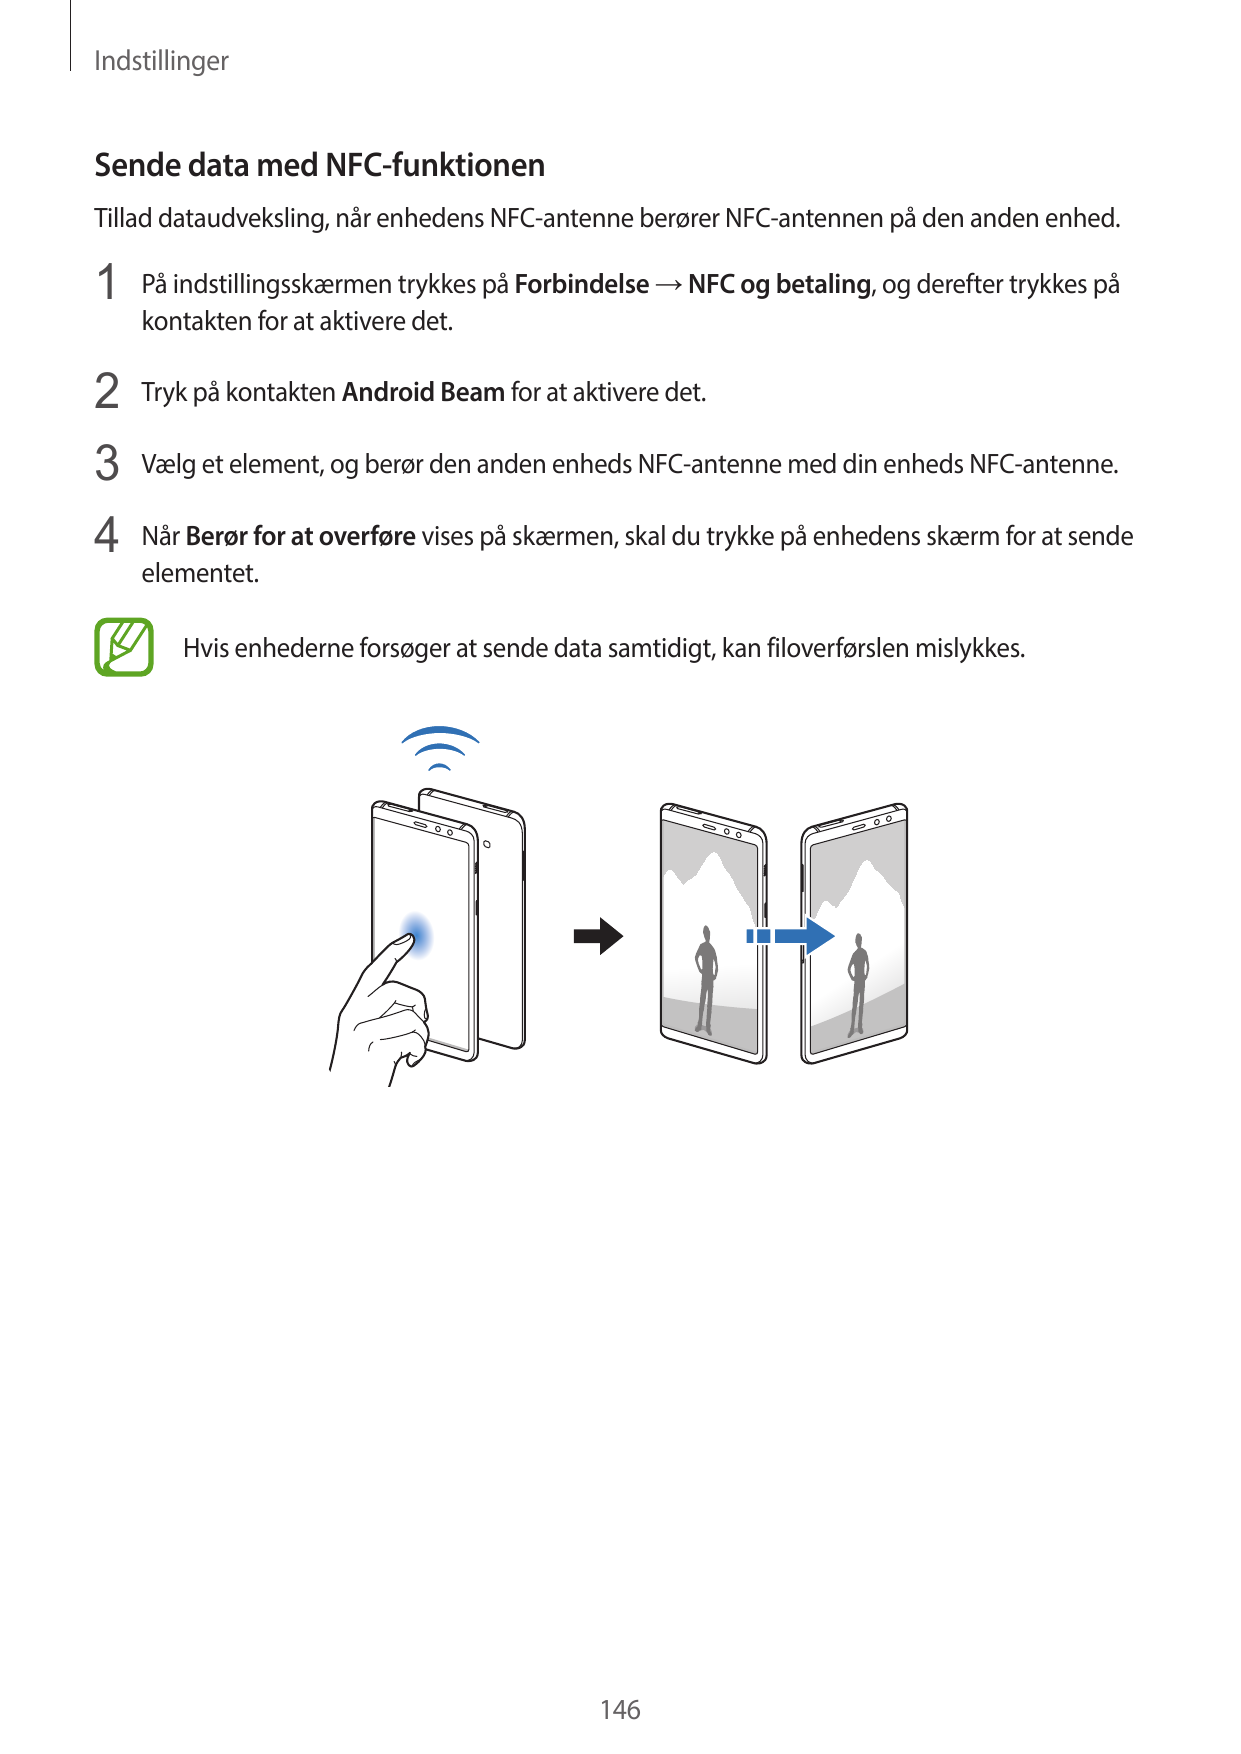 IndstillingerSende data med NFC-funktionenTillad dataudveksling, når enhedens NFC-antenne berører NFC-antennen på den anden enhe